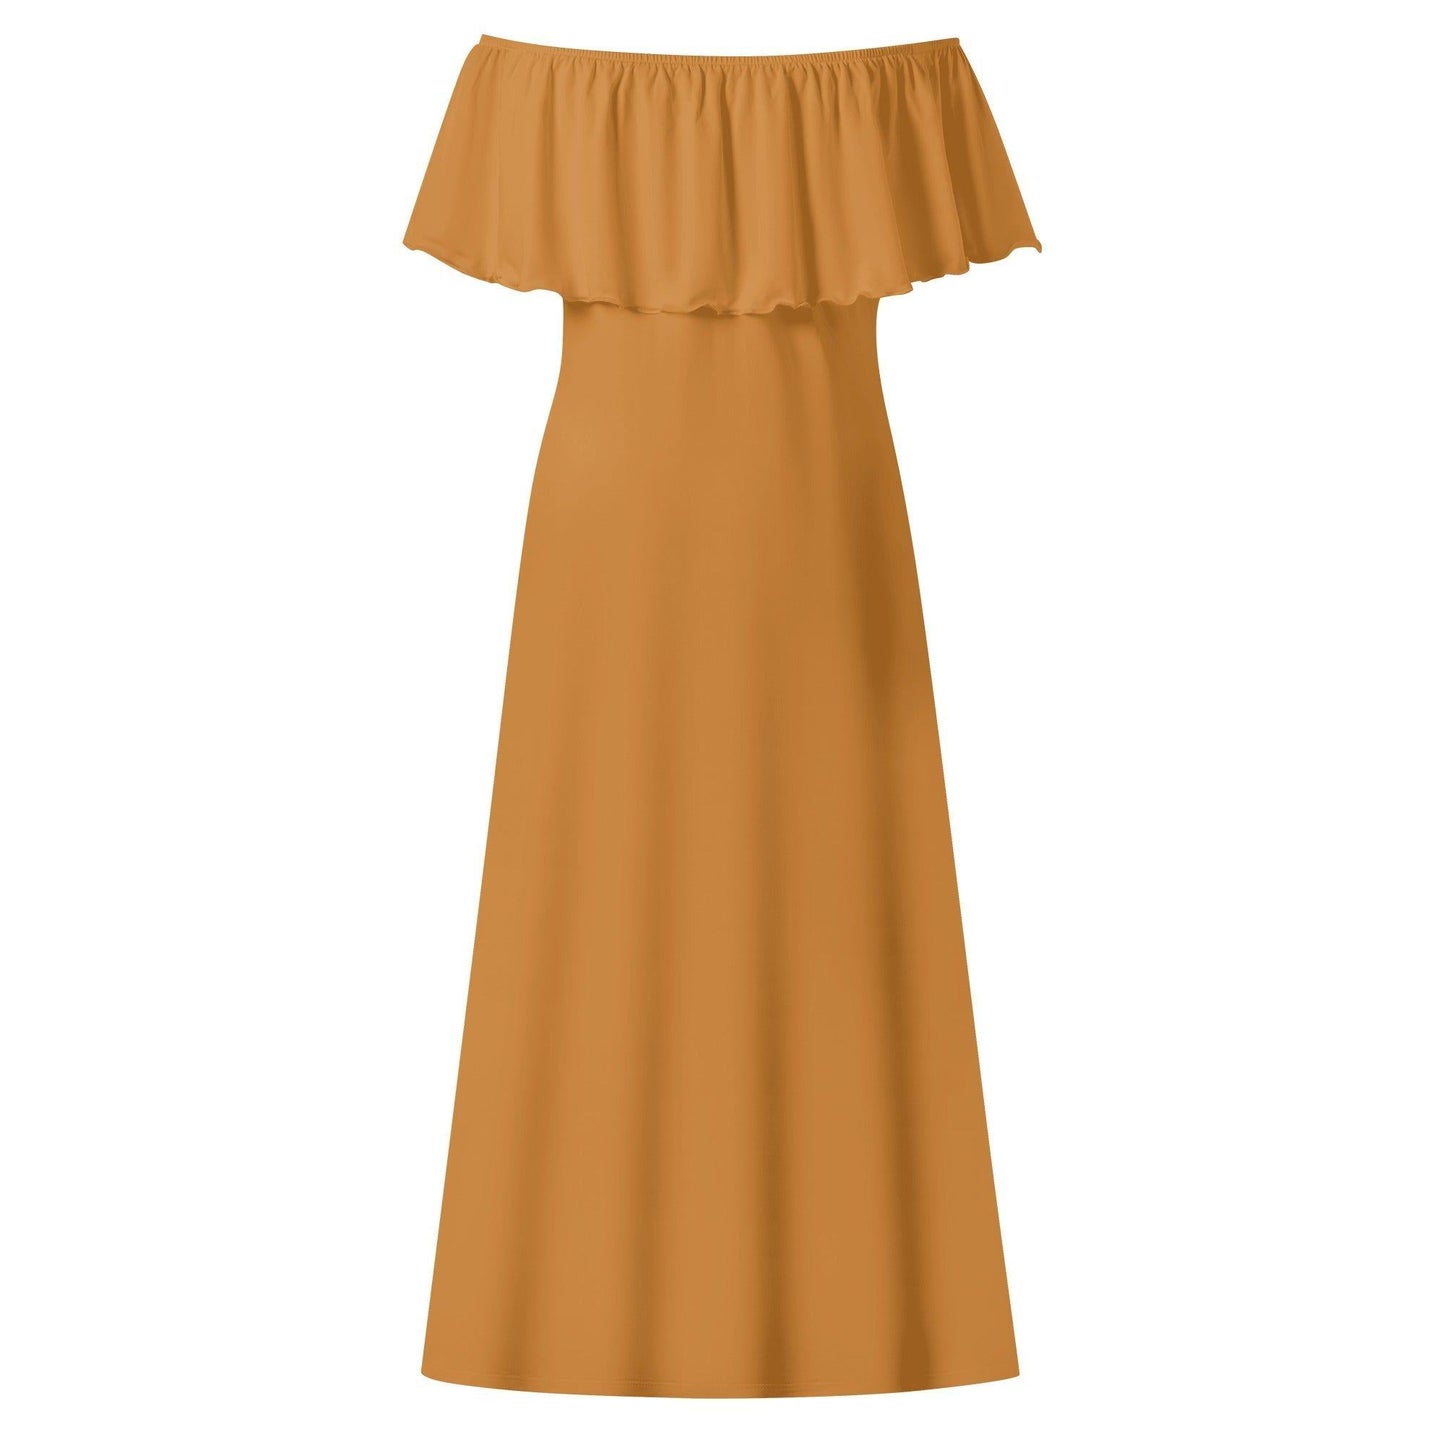 Langes schulterfreies bronze Kleid mit lockerem Oberteil Off-Shoulder-Kleid 73.99 Bronze, Kleid, Lang, locker, Oberteil, Schulterfrei JLR Design